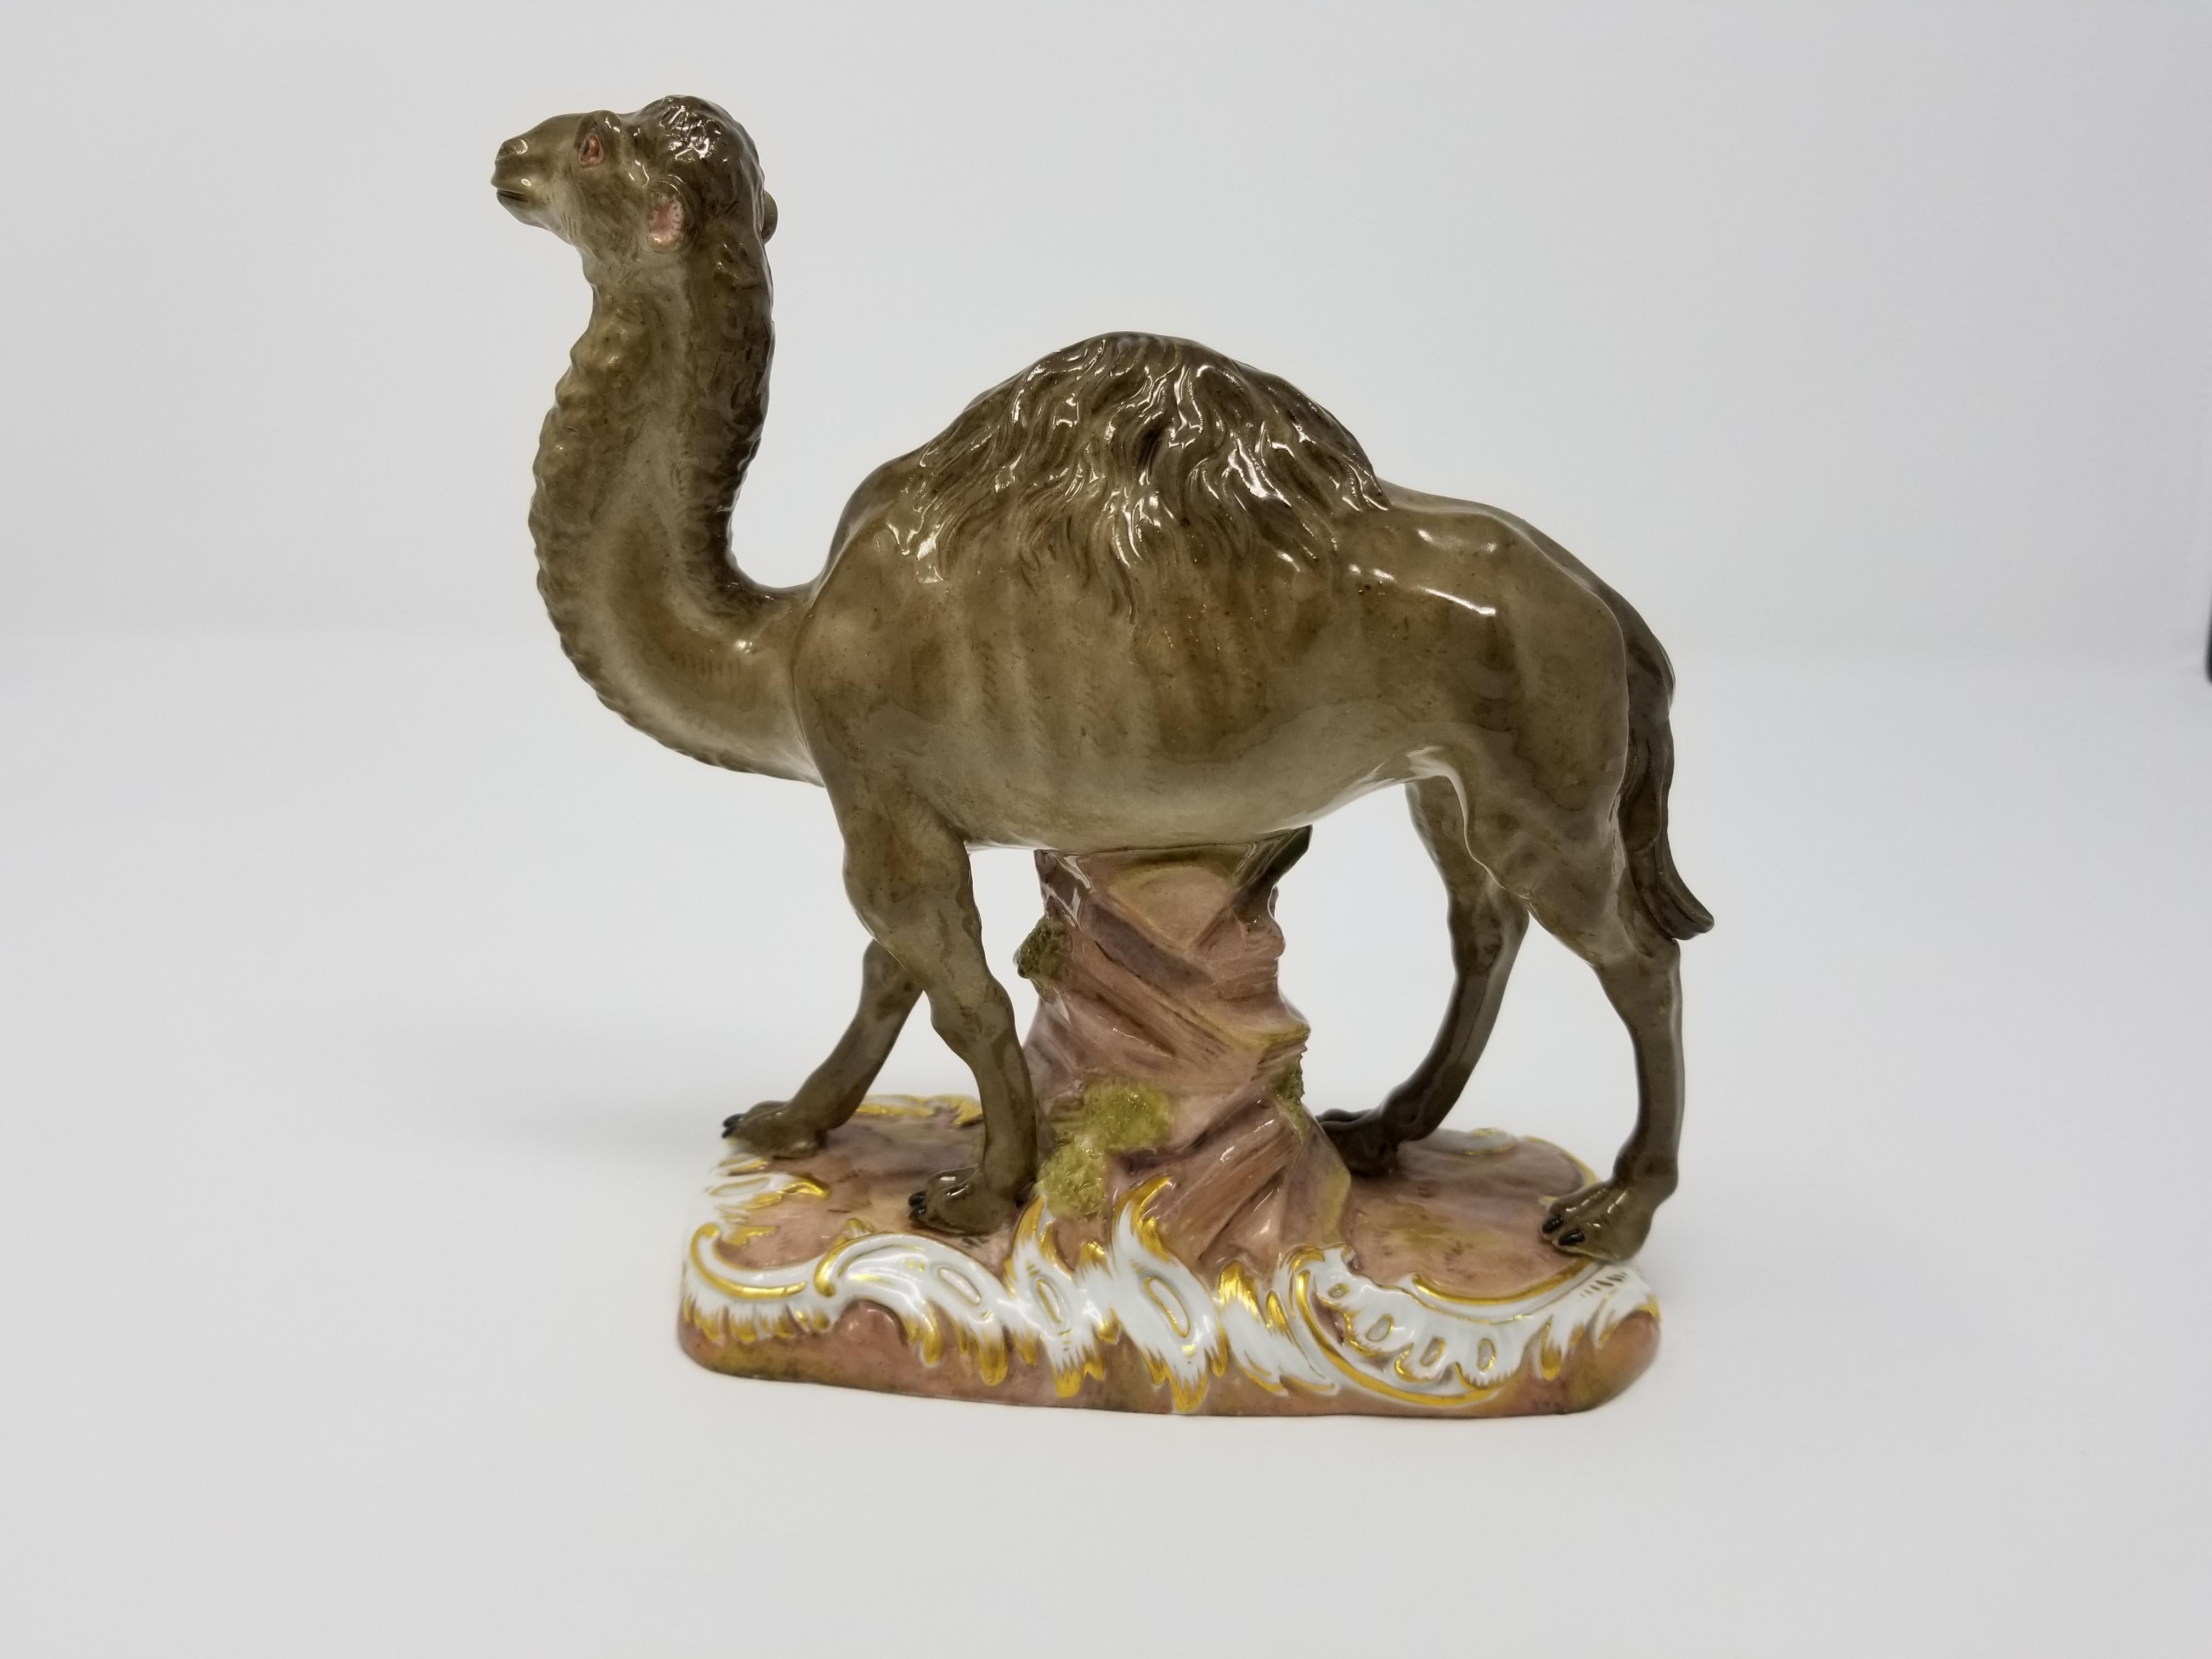 Figurine de chameau Meissen du 19e siècle, avec marque de double épée croisée sous glaçure bleue, d'après J. J. Kandler.
Modèle naturel au-dessus d'un affleurement rocheux sur une base moulée à volutes et rehaussée de dorures. En dessous se trouve